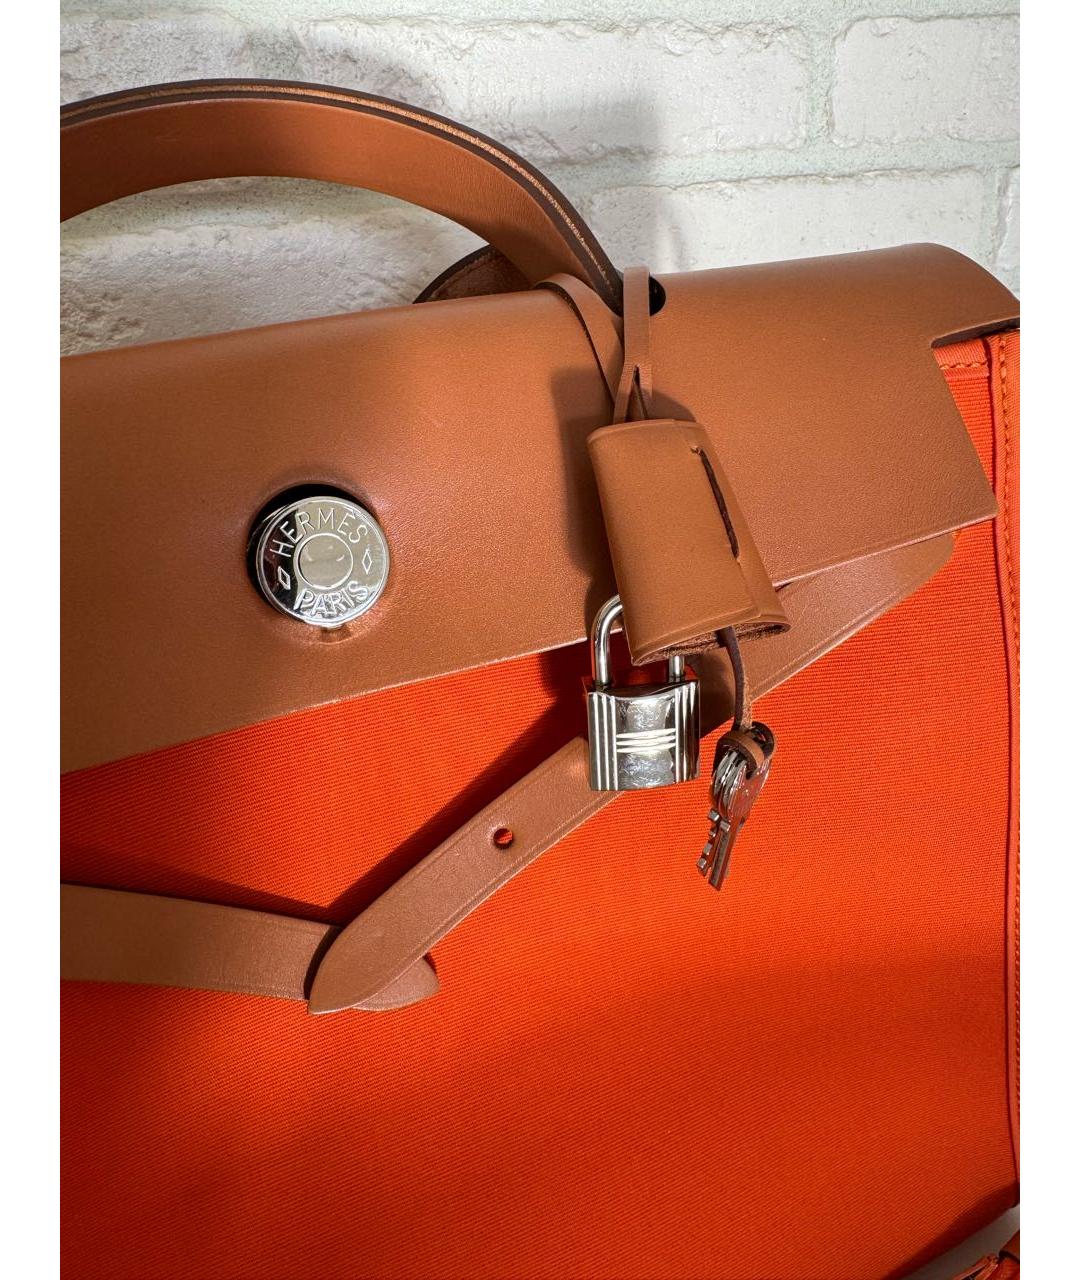 HERMES Оранжевая кожаная сумка с короткими ручками, фото 2